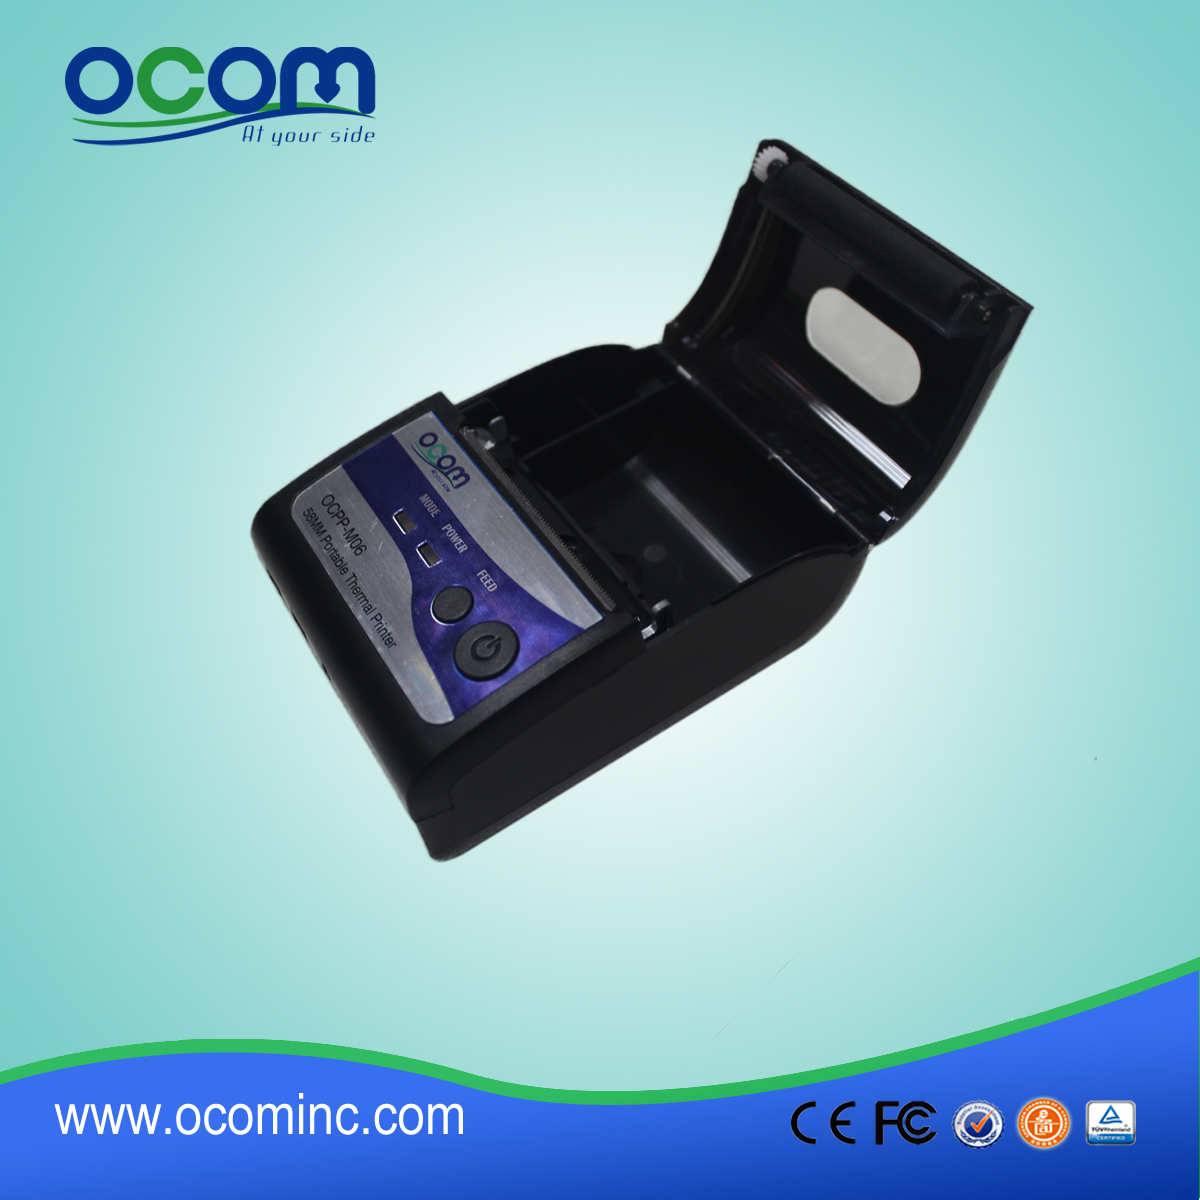 (OCPP-М06) OCOM горячие продажи низкая стоимость pos андроид принтер, pos принтер 58 мм